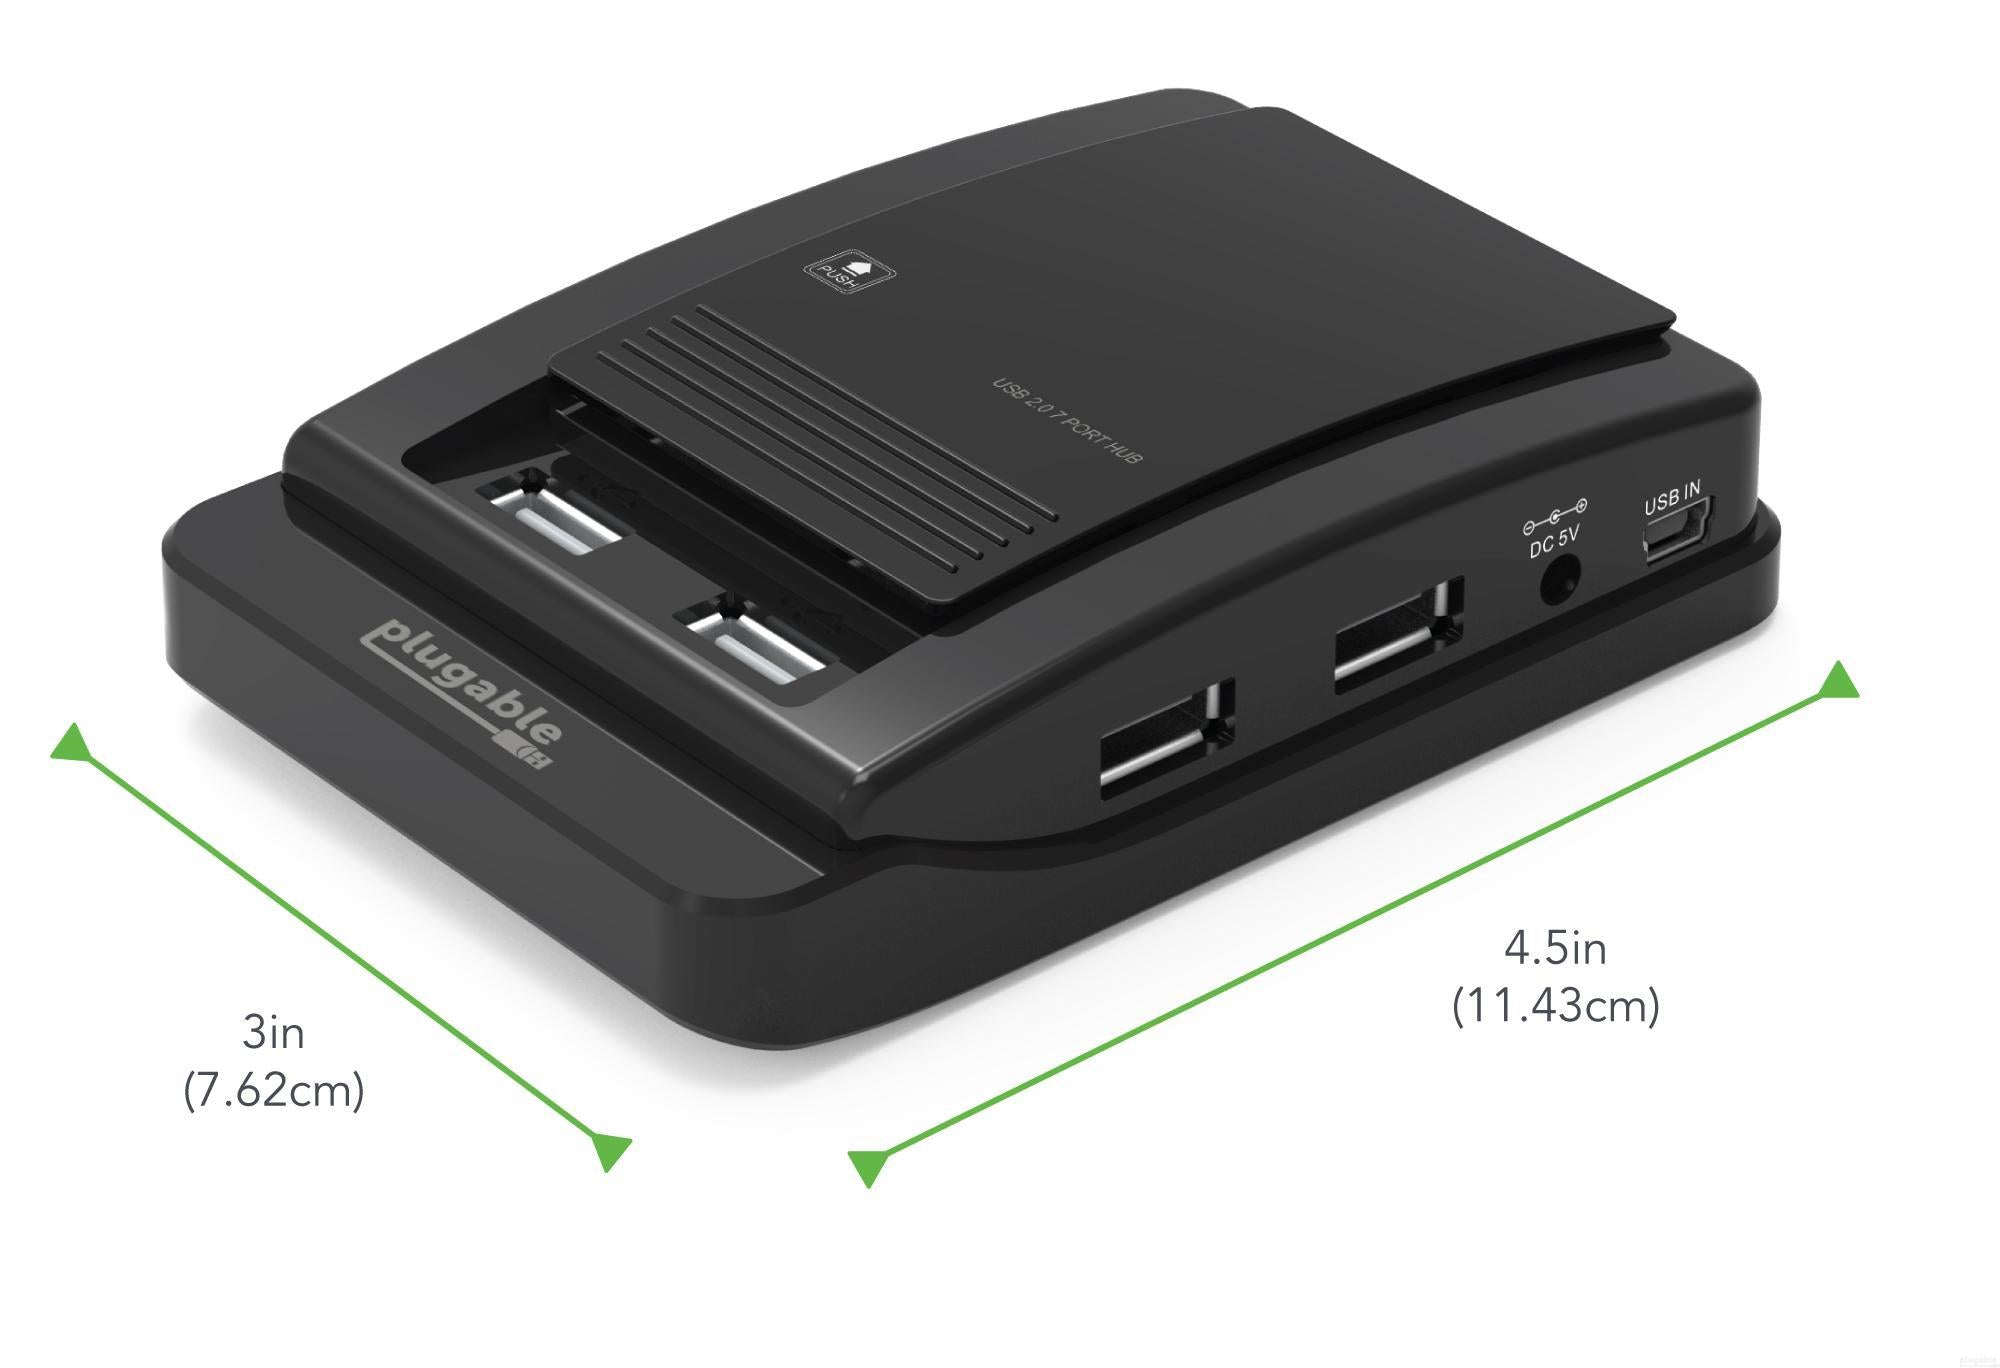 Plugable USB 3.0 and USB-C 7-Port Charging Hub – Plugable Technologies